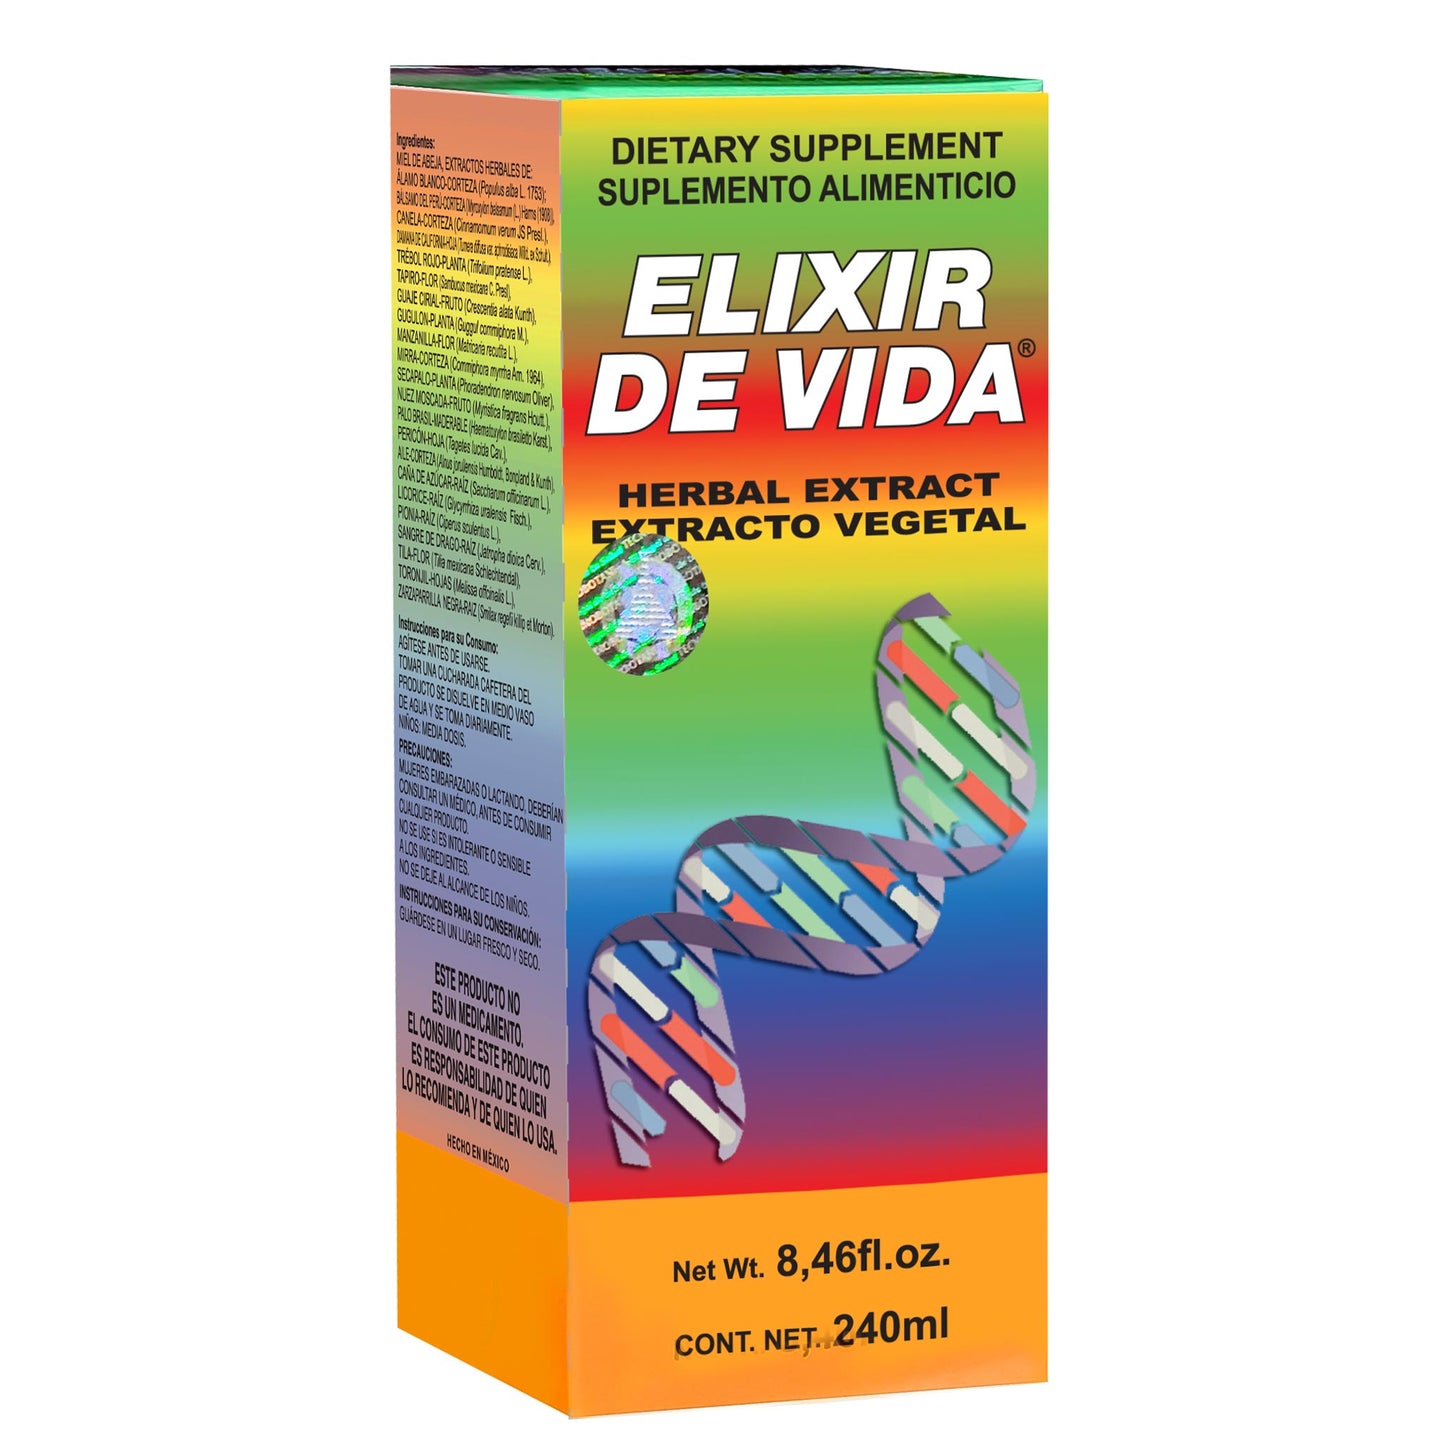 ELIXIR DE VIDA ® extracto vegetal 240ml